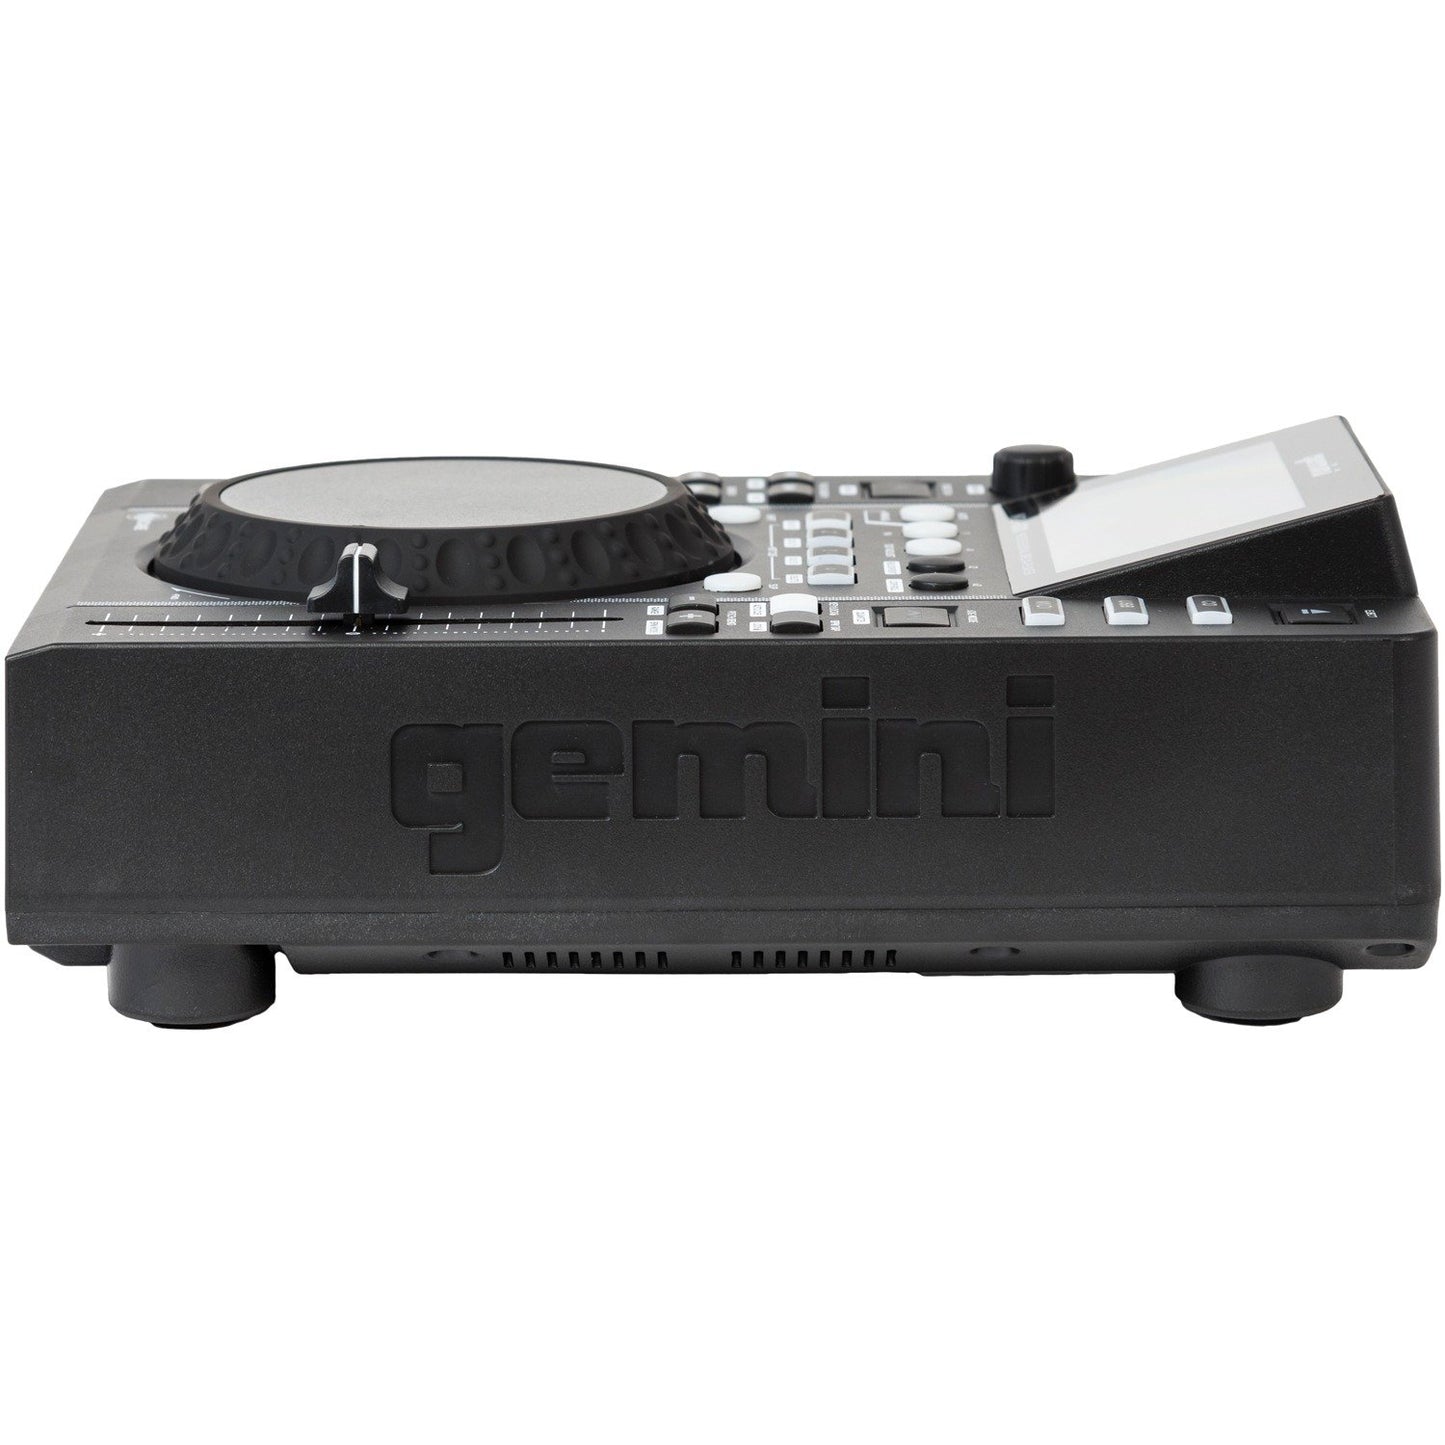 Gemini MDJ-600 MDJ-600 Professional USB & CD Media Player